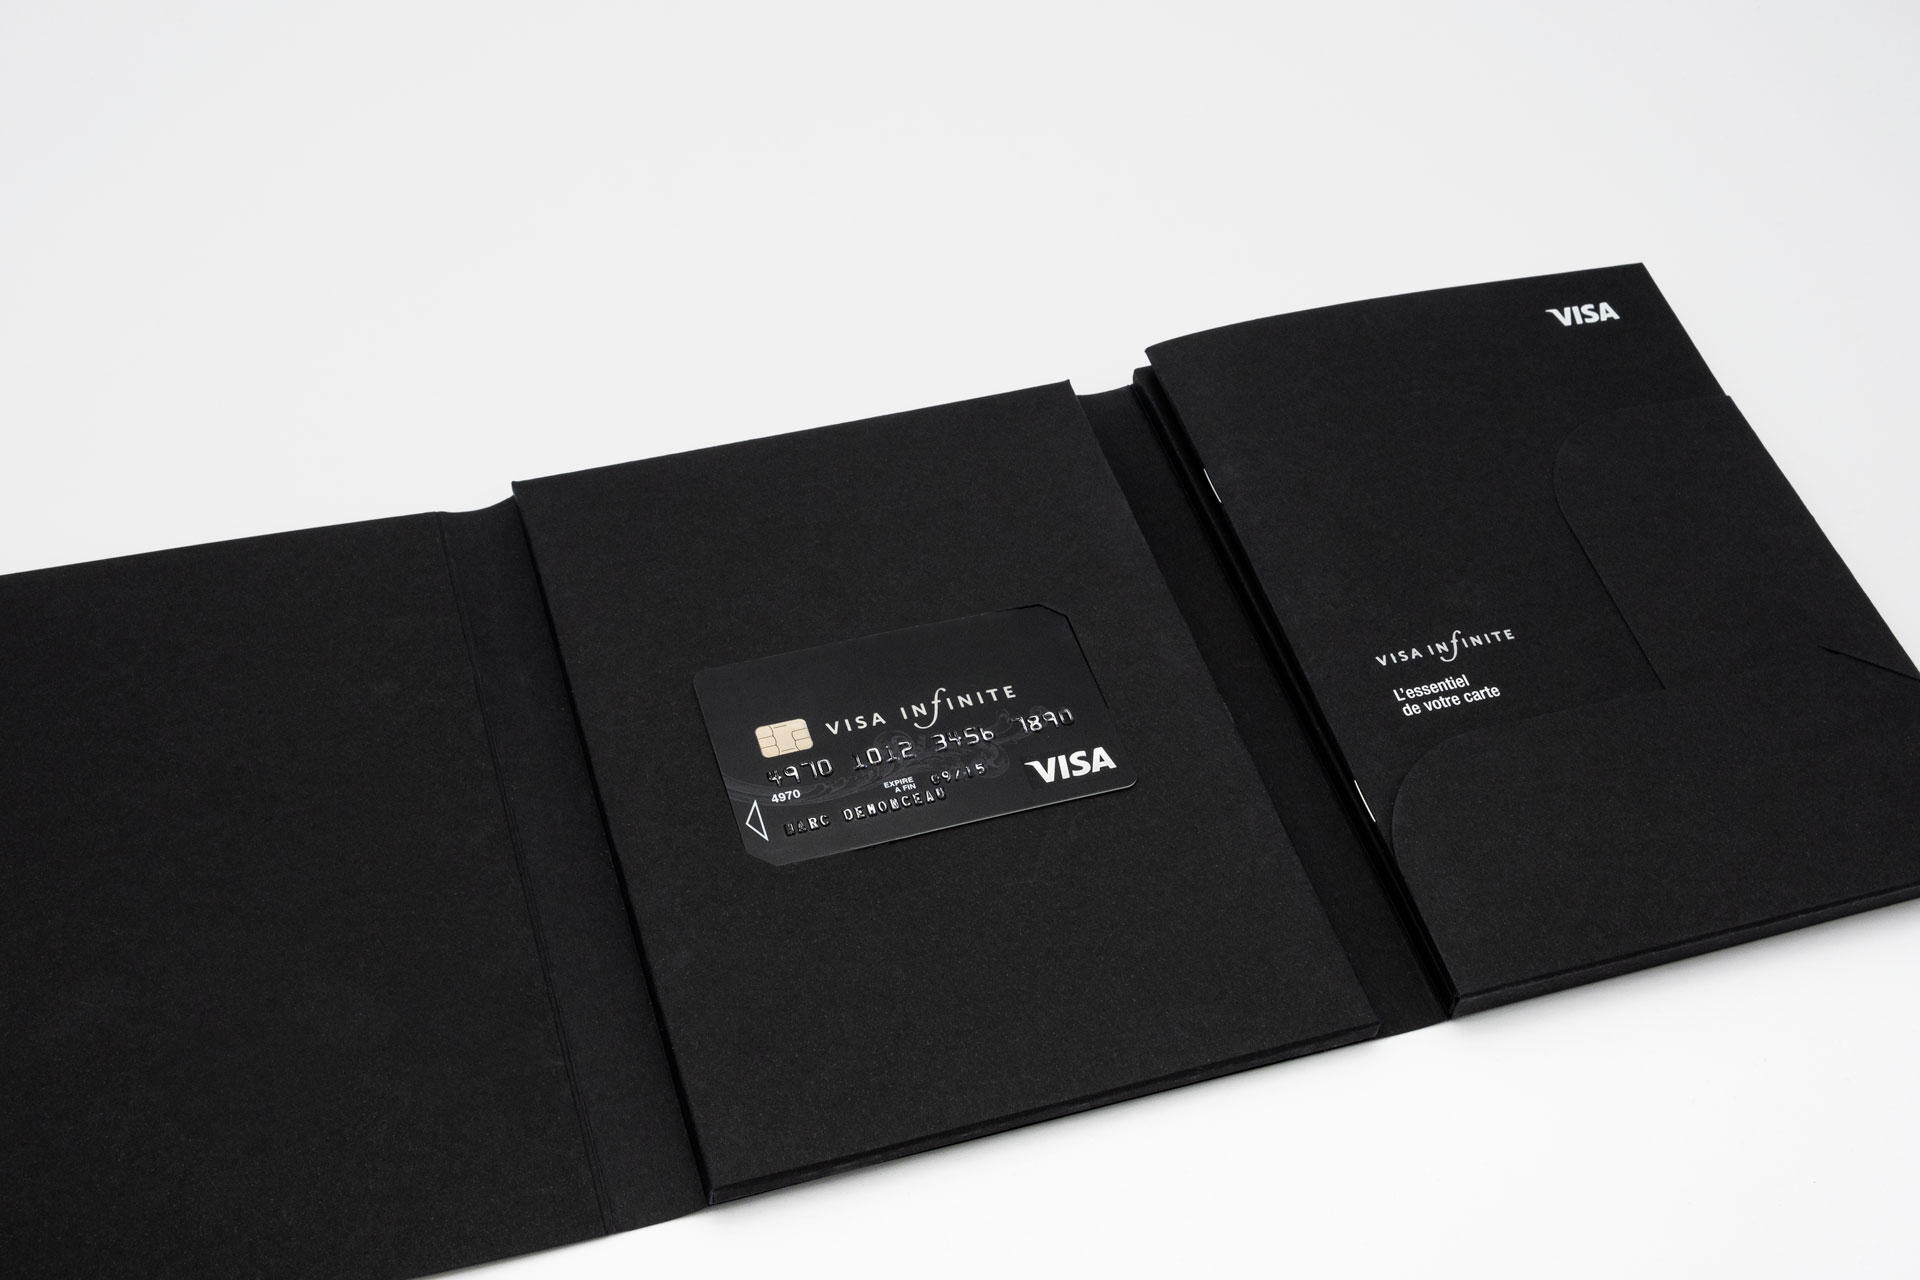 Vue du Welcome Pack ouvert, deux plis roulés, sur la droite dans un rabat se trouve le guide d’utilisation, au centre dans deux encoches la carte Visa Infinite l'ensemble est constitué de papier noir teinté masse.